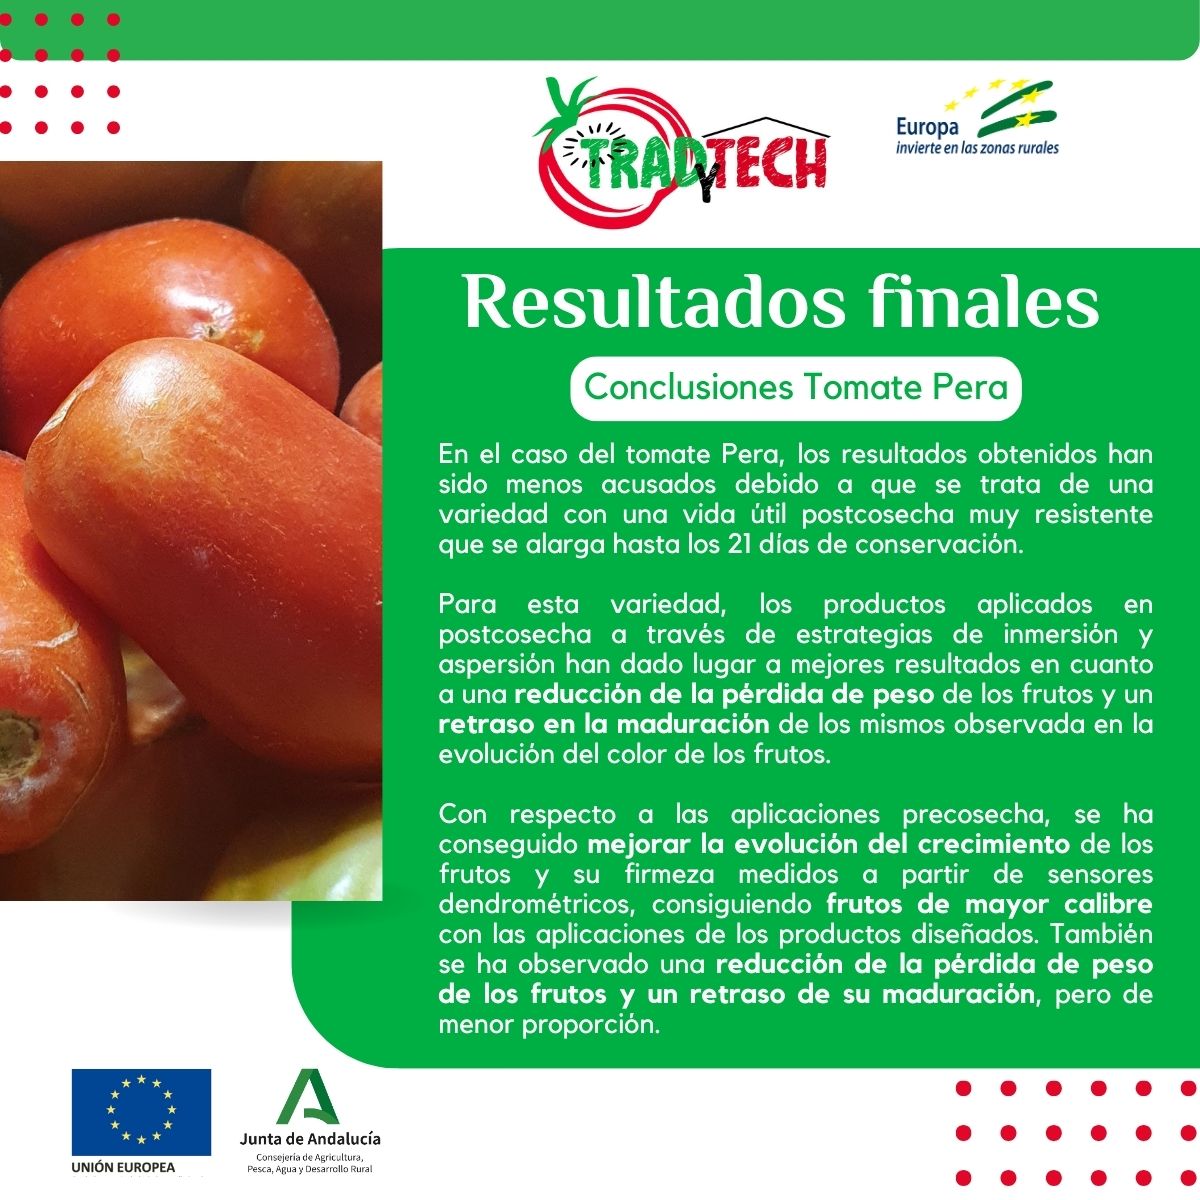 RESULTADOS FINALES GO TRADYTECH!! Estrategias de manejo en la cadena productiva de cultivo de tomate, mediante el 𝙙𝙚𝙨𝙖𝙧𝙧𝙤𝙡𝙡𝙤 𝙙𝙚 𝙥𝙧𝙤𝙙𝙪𝙘𝙩𝙤𝙨 𝙣𝙖𝙩𝙪𝙧𝙖𝙡𝙚𝙨 @UE_ANDALUCIA @AndaluciaJunta @AgriculturAnd @CTTecnova @aln_sa @ecoinver @guadalhorce_eco #Tardytech